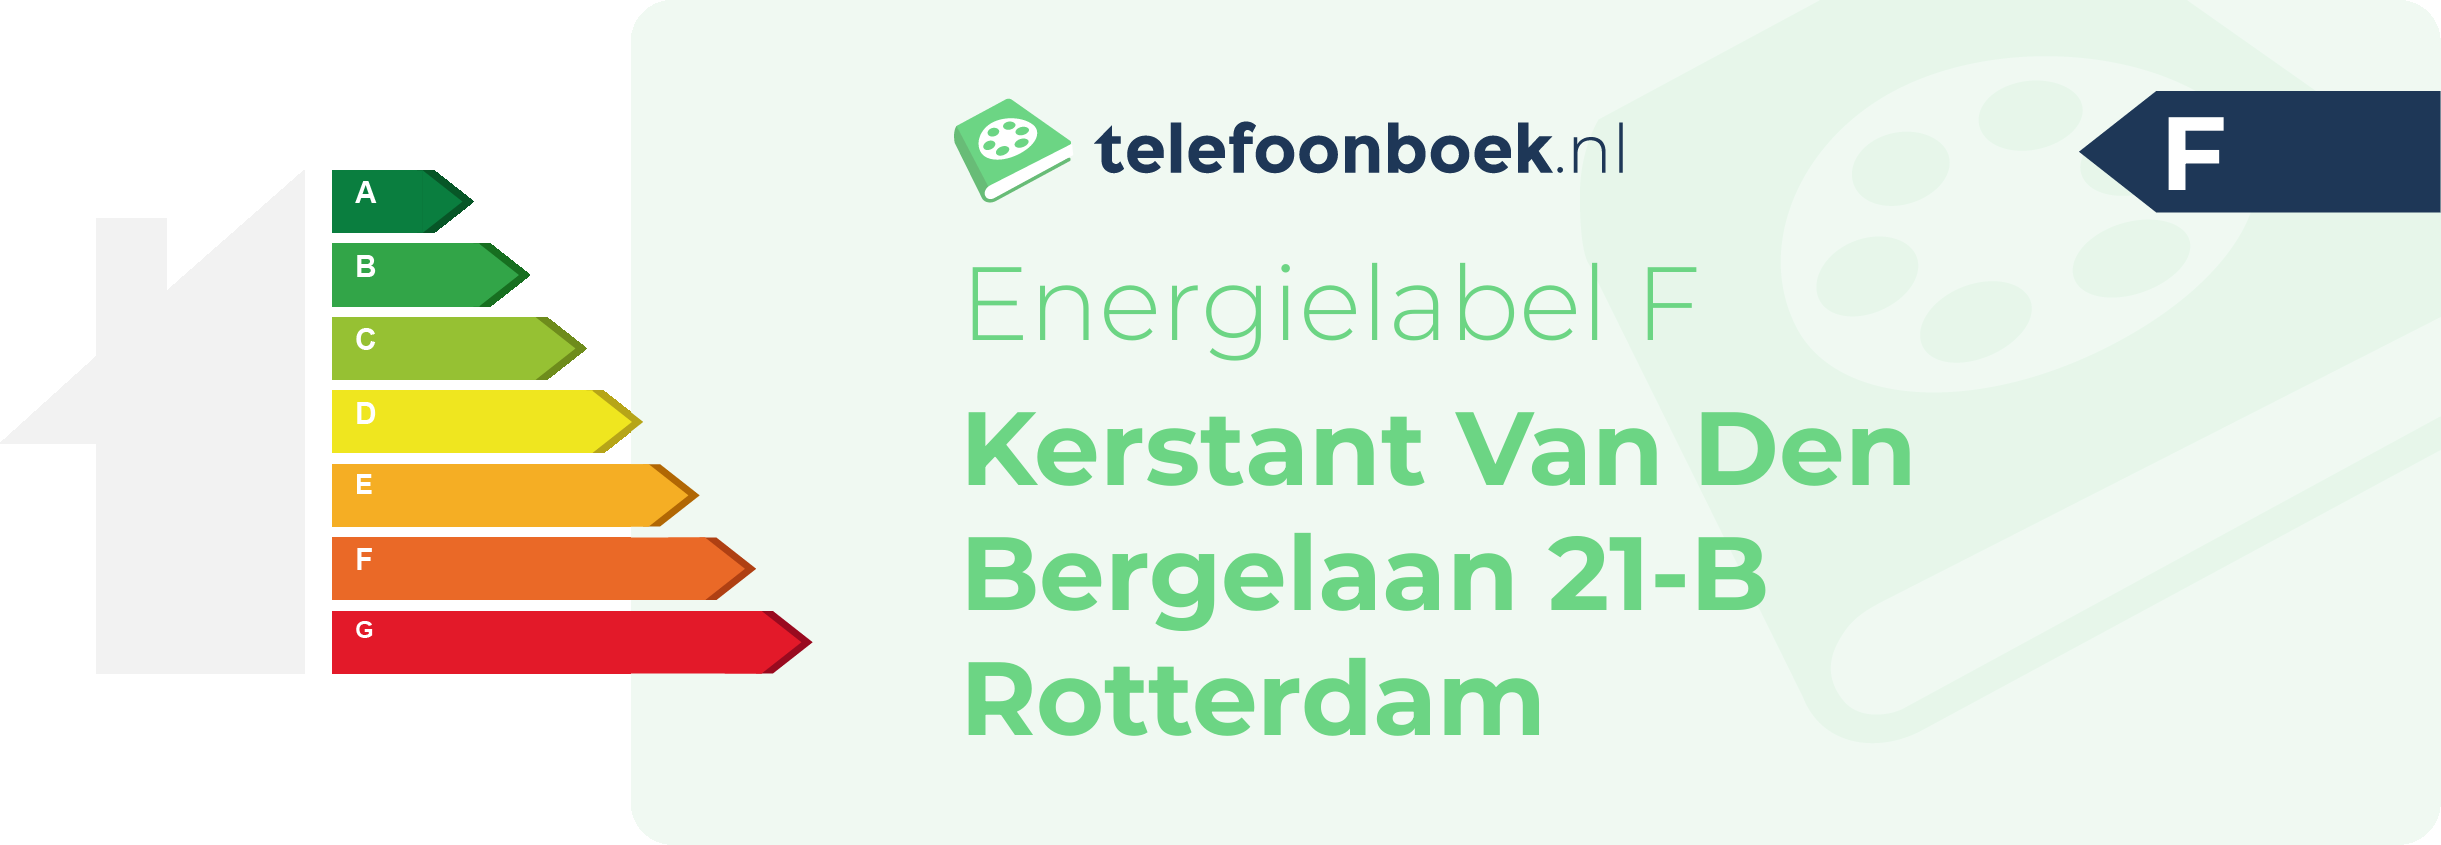 Energielabel Kerstant Van Den Bergelaan 21-B Rotterdam